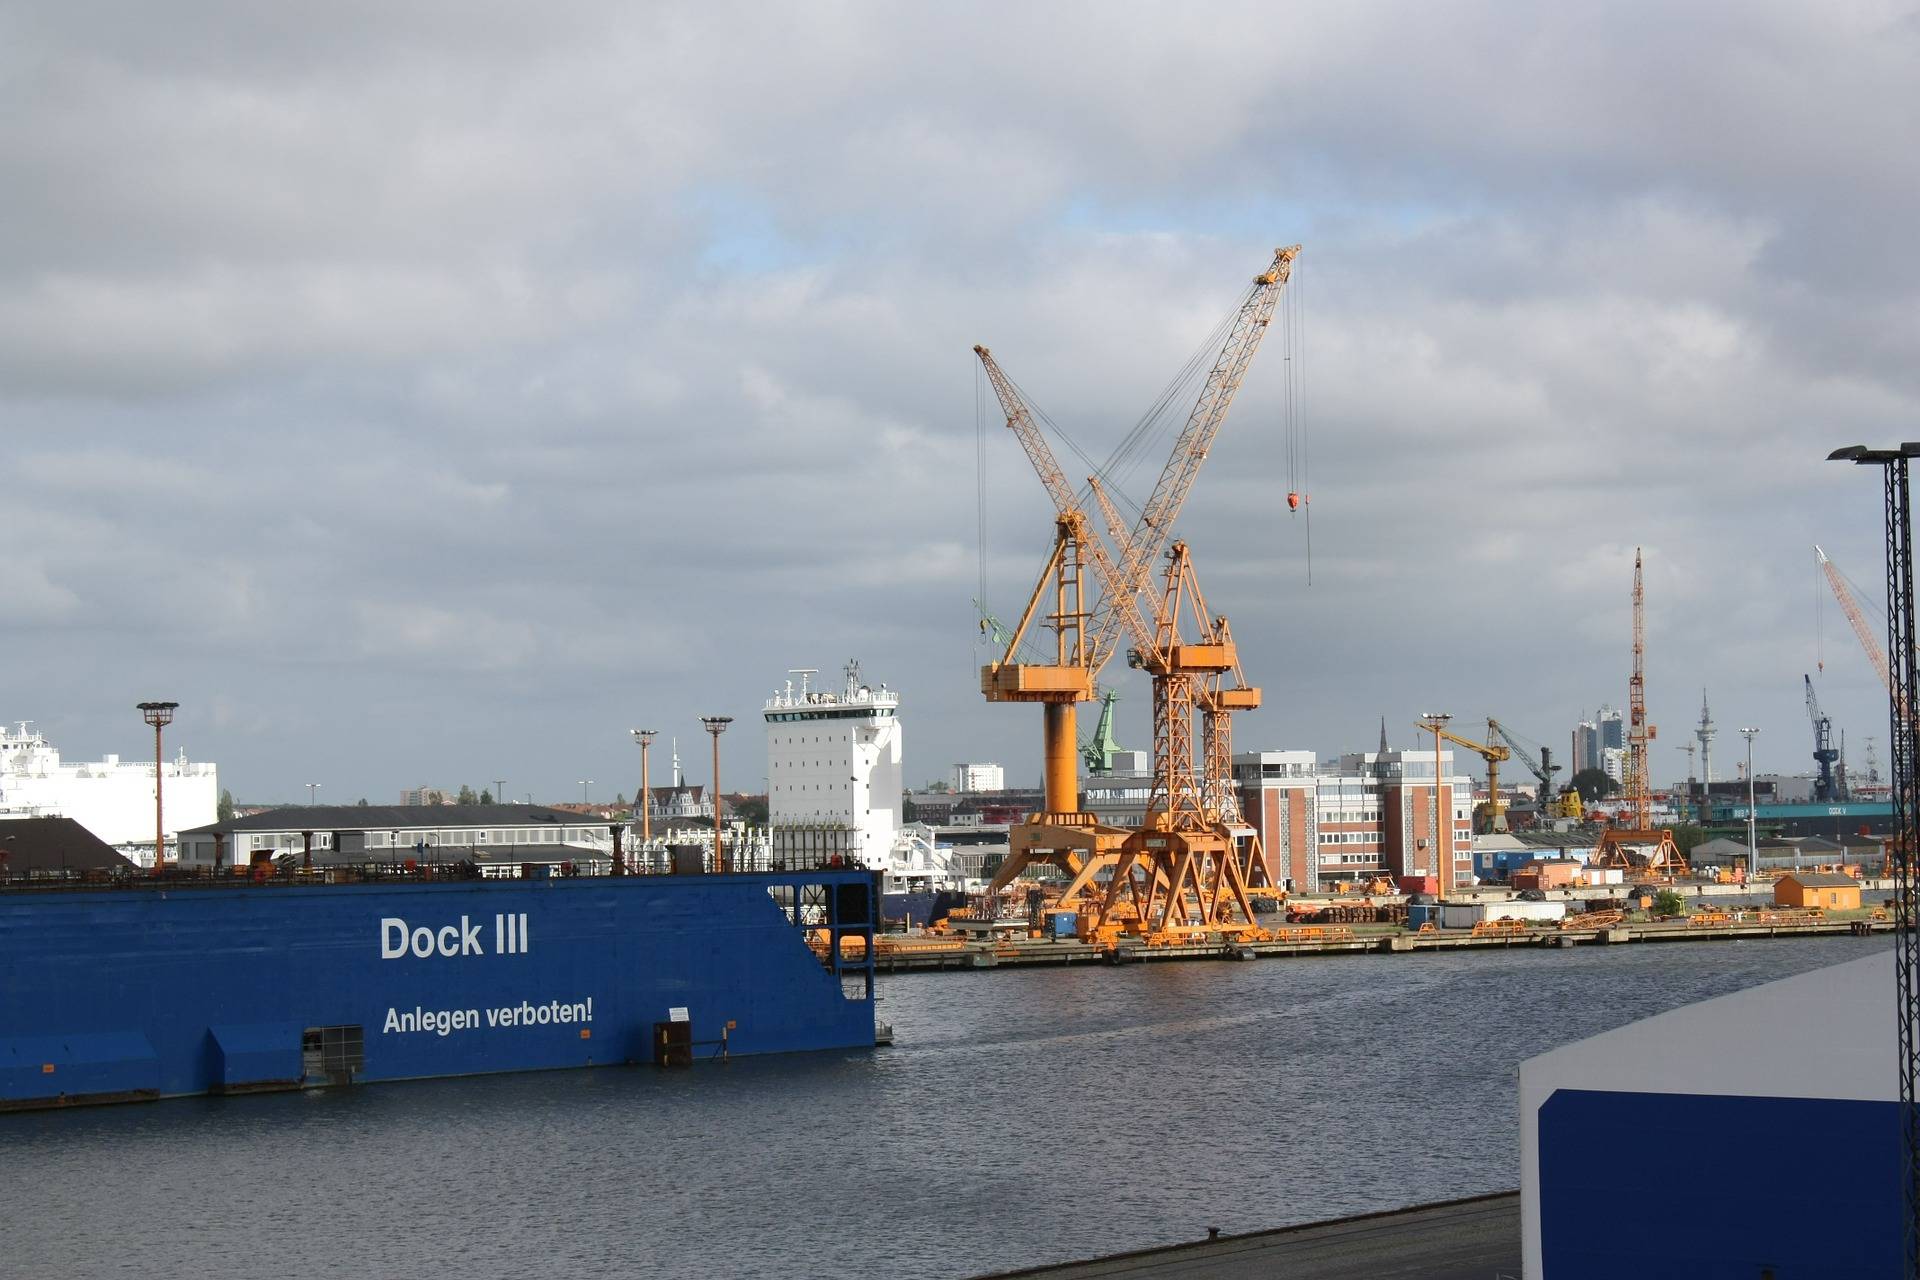 几大船公司的某几条船将不再停靠菲利克斯托港口,转而在比利时港口